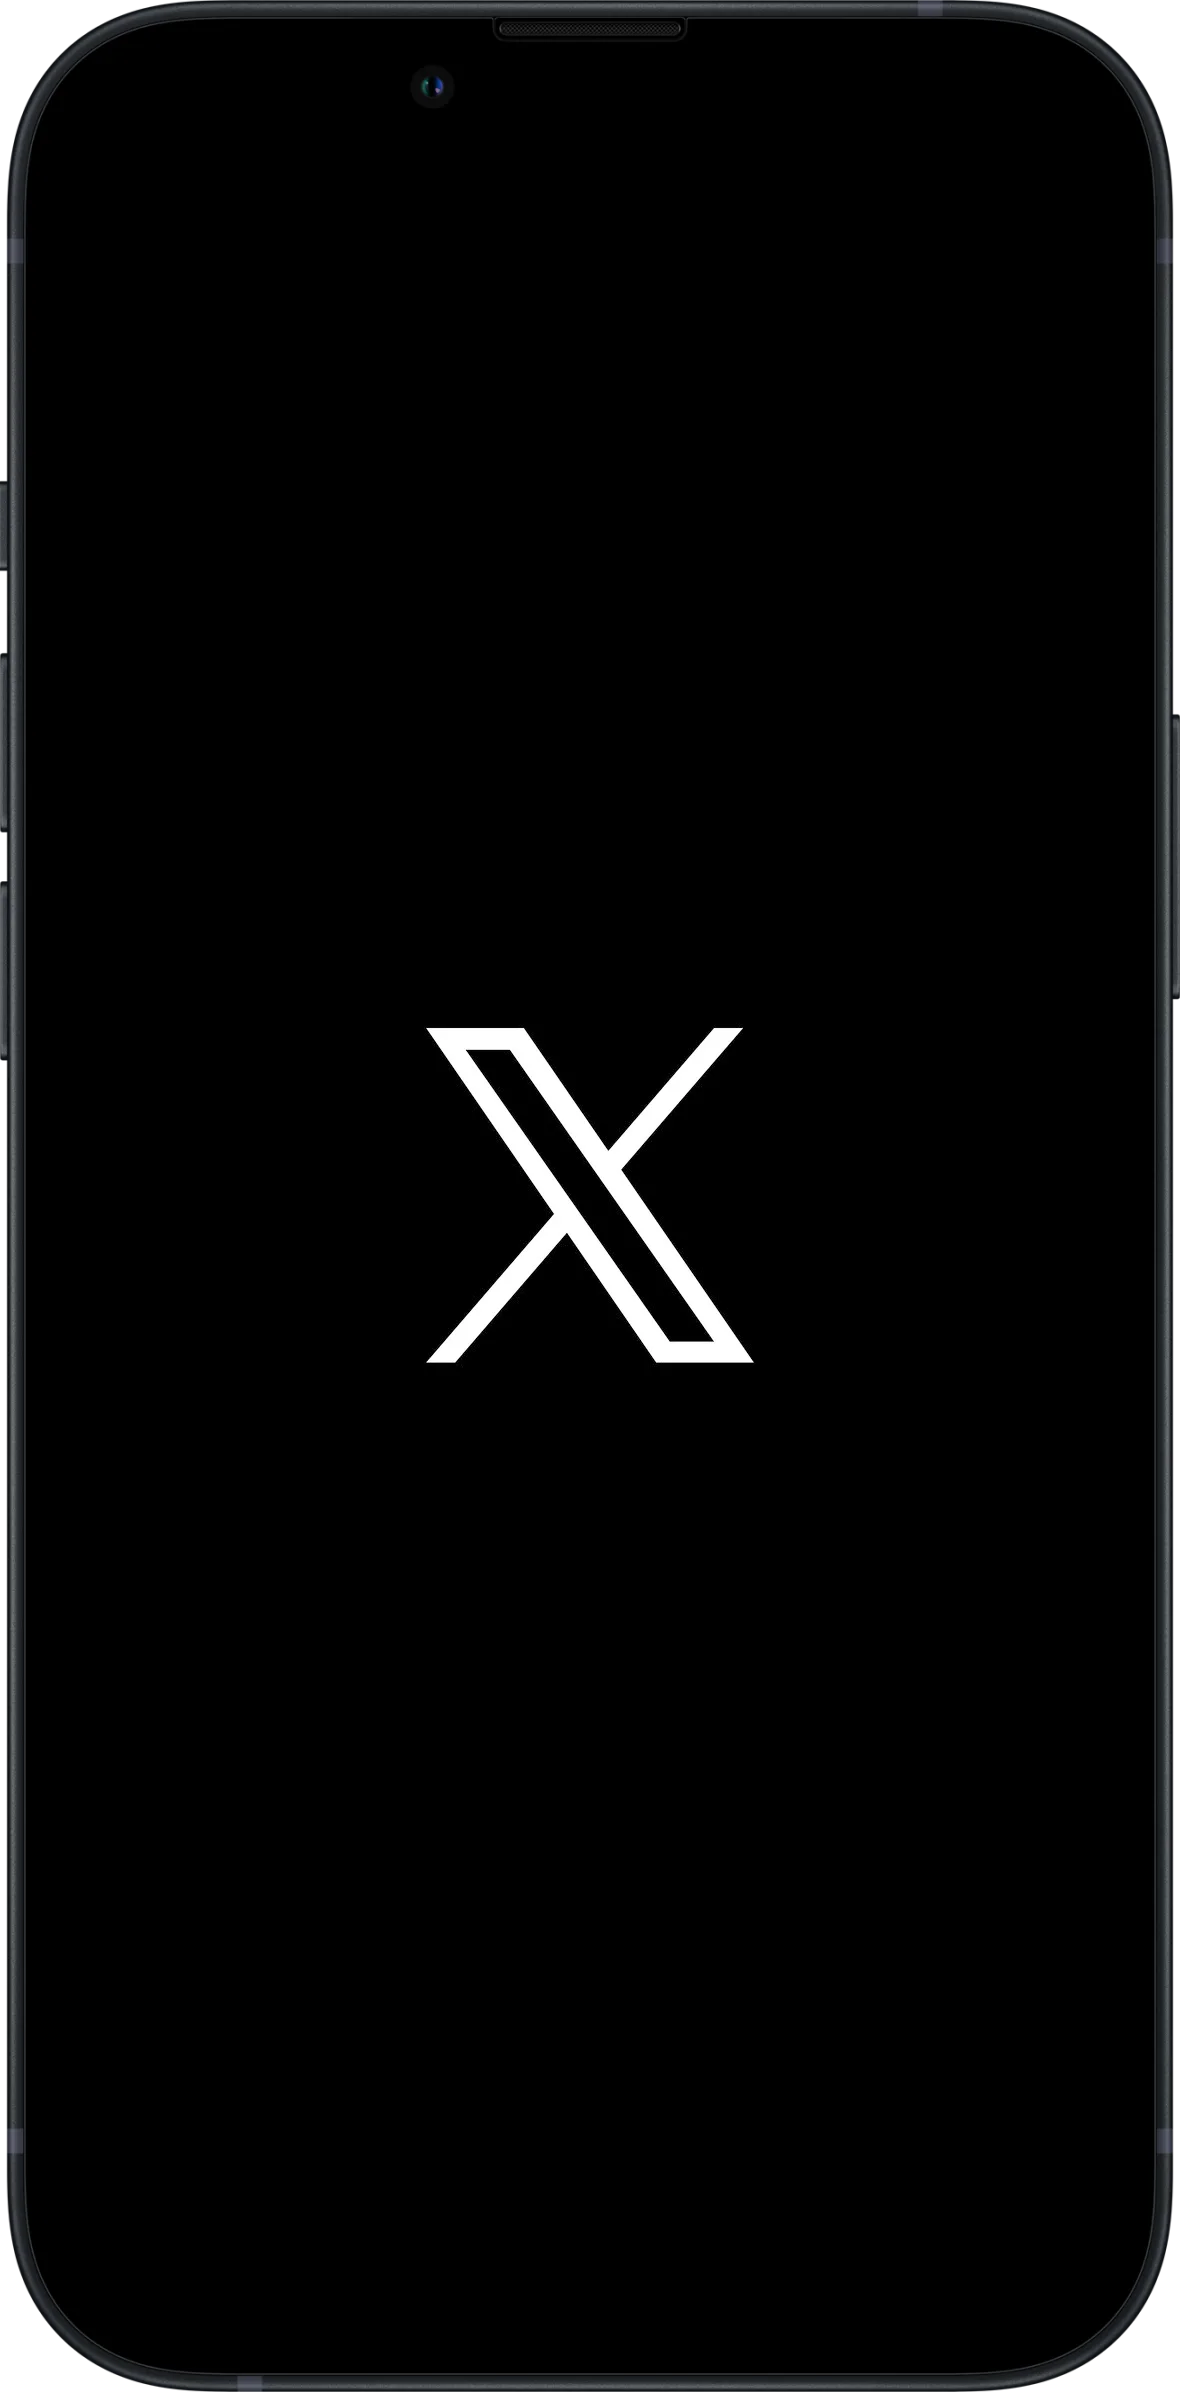 iPhoneにXのロゴと黒い背景が表示されている。